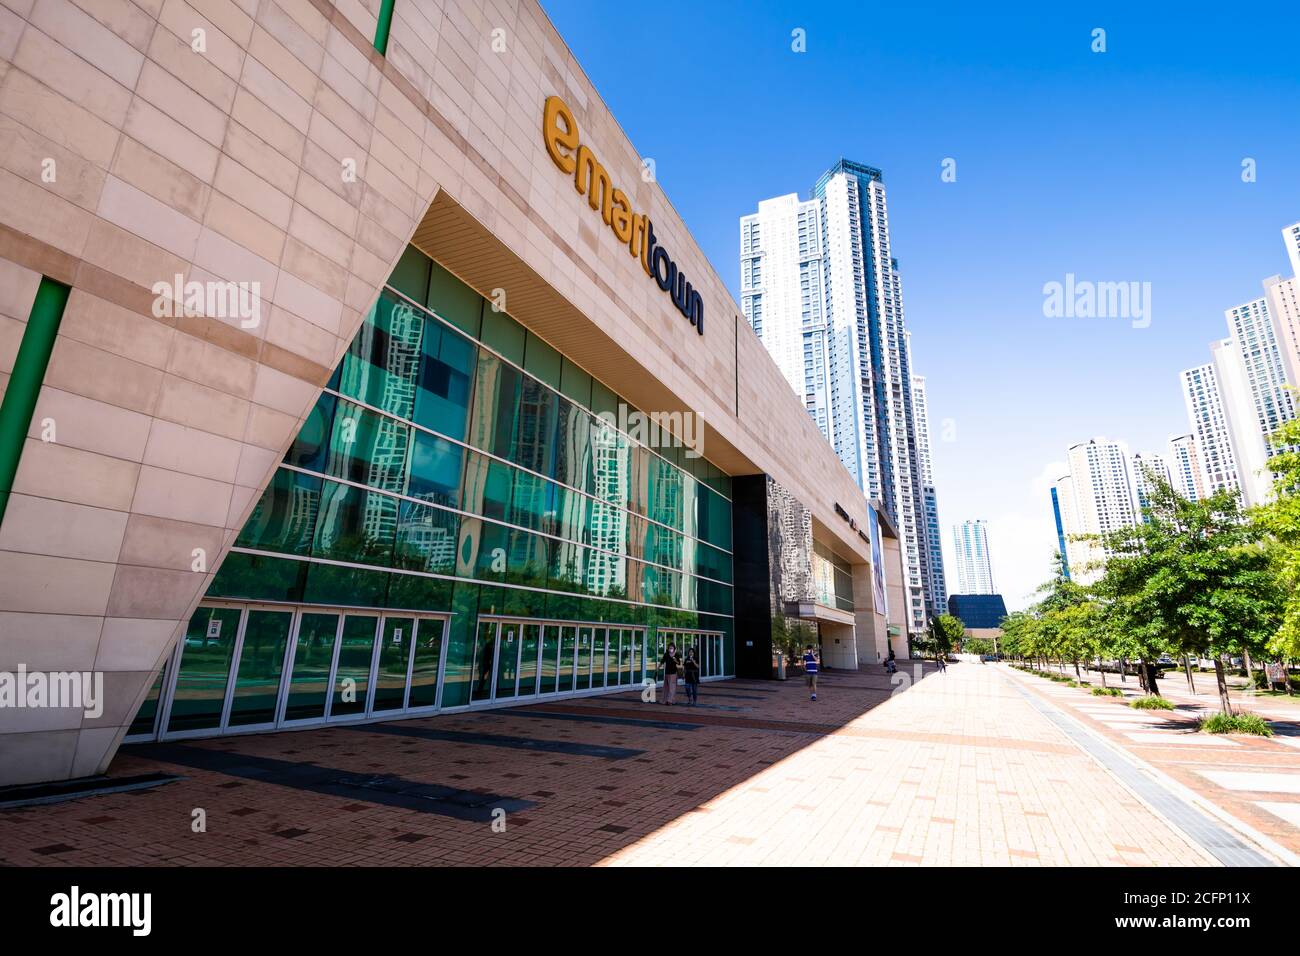 An E Mart Town A Super Shopping Center In The Kintex Area Of Goyang South Korea Stock Photo Alamy